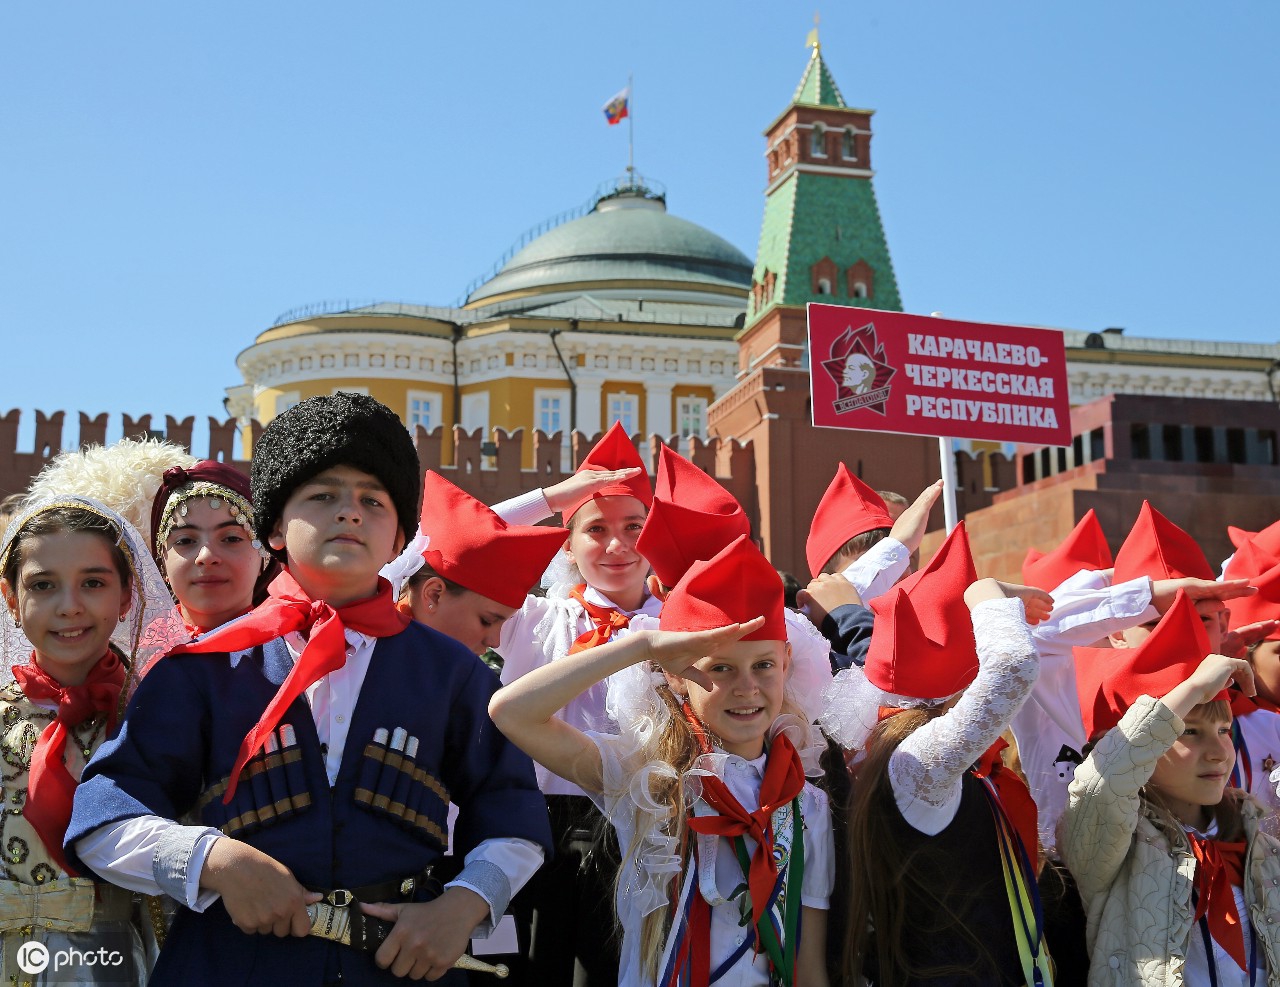 俄罗斯舞会将于6月12日首次登陆中国 - 2018年5月22日, 俄罗斯卫星通讯社